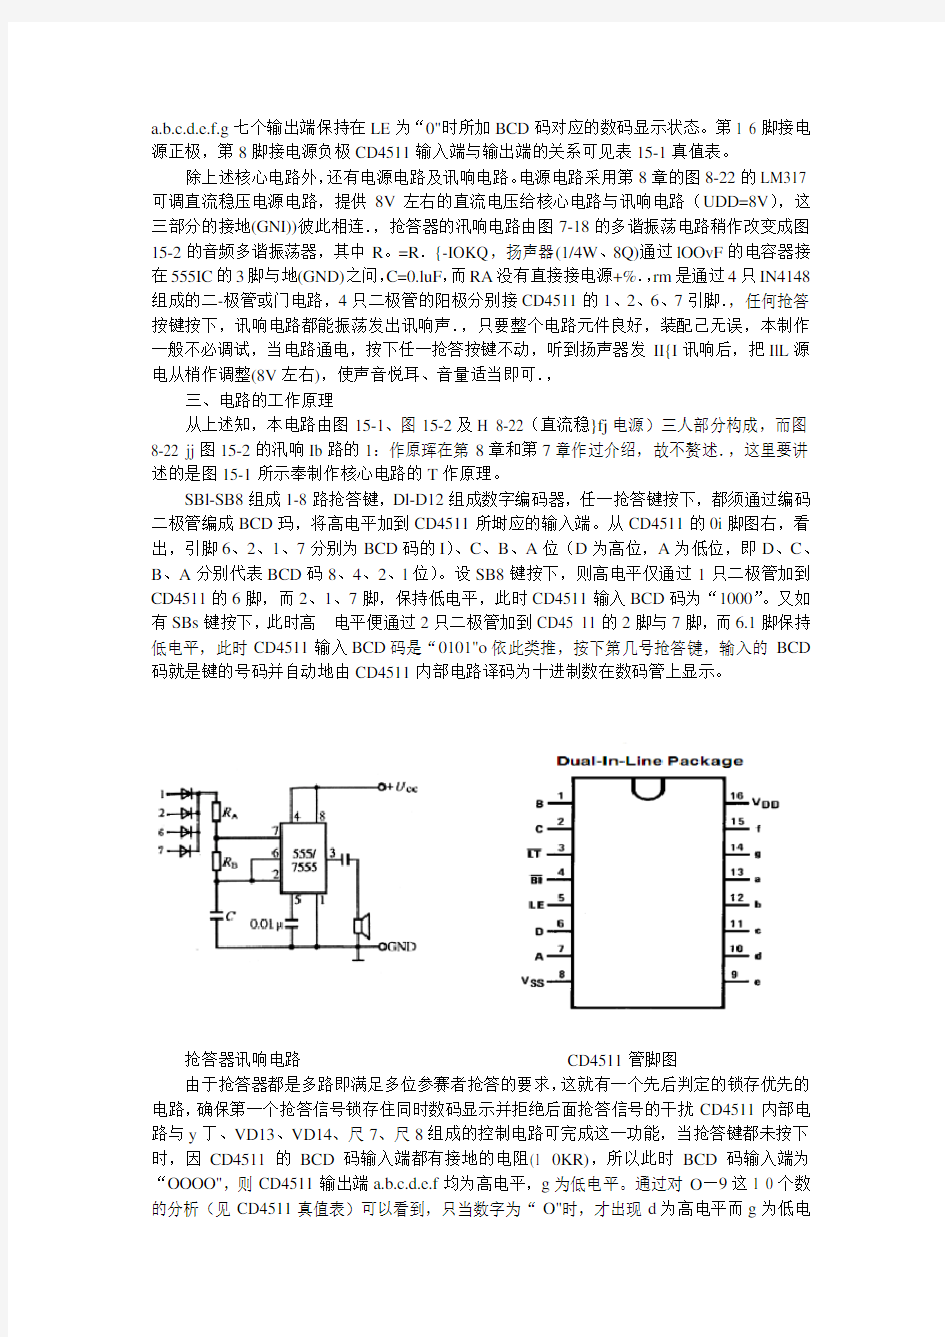 《2002年江西省电子设计大赛题目及电路解析》